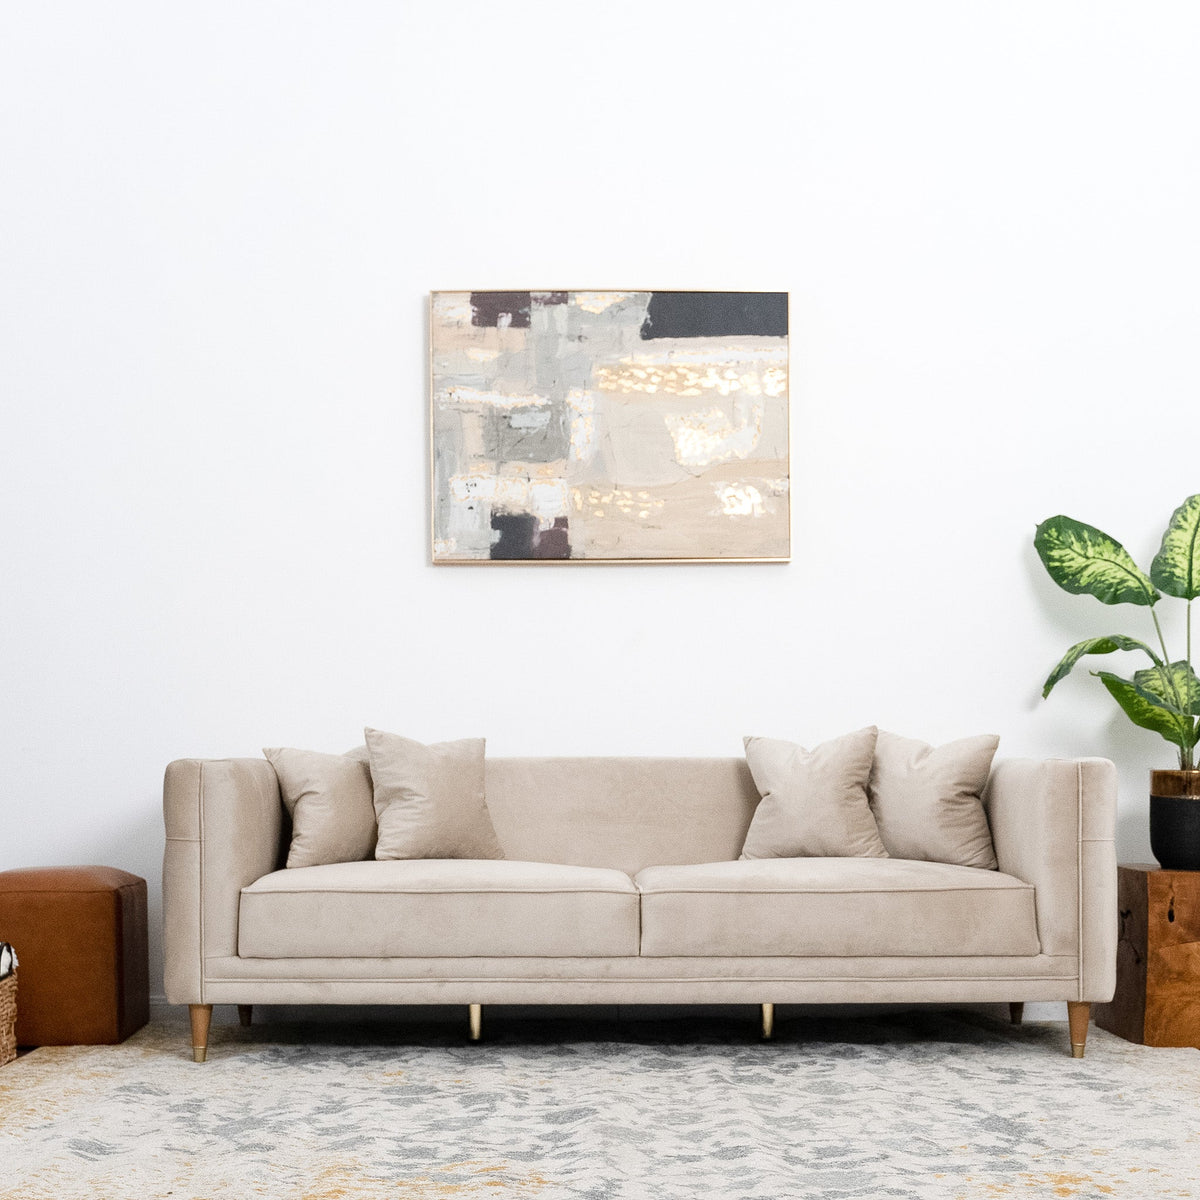 Mara Sofa - Light Cream Velvet Couch | MidinMod | Houston TX | Best Furniture stores in Houston